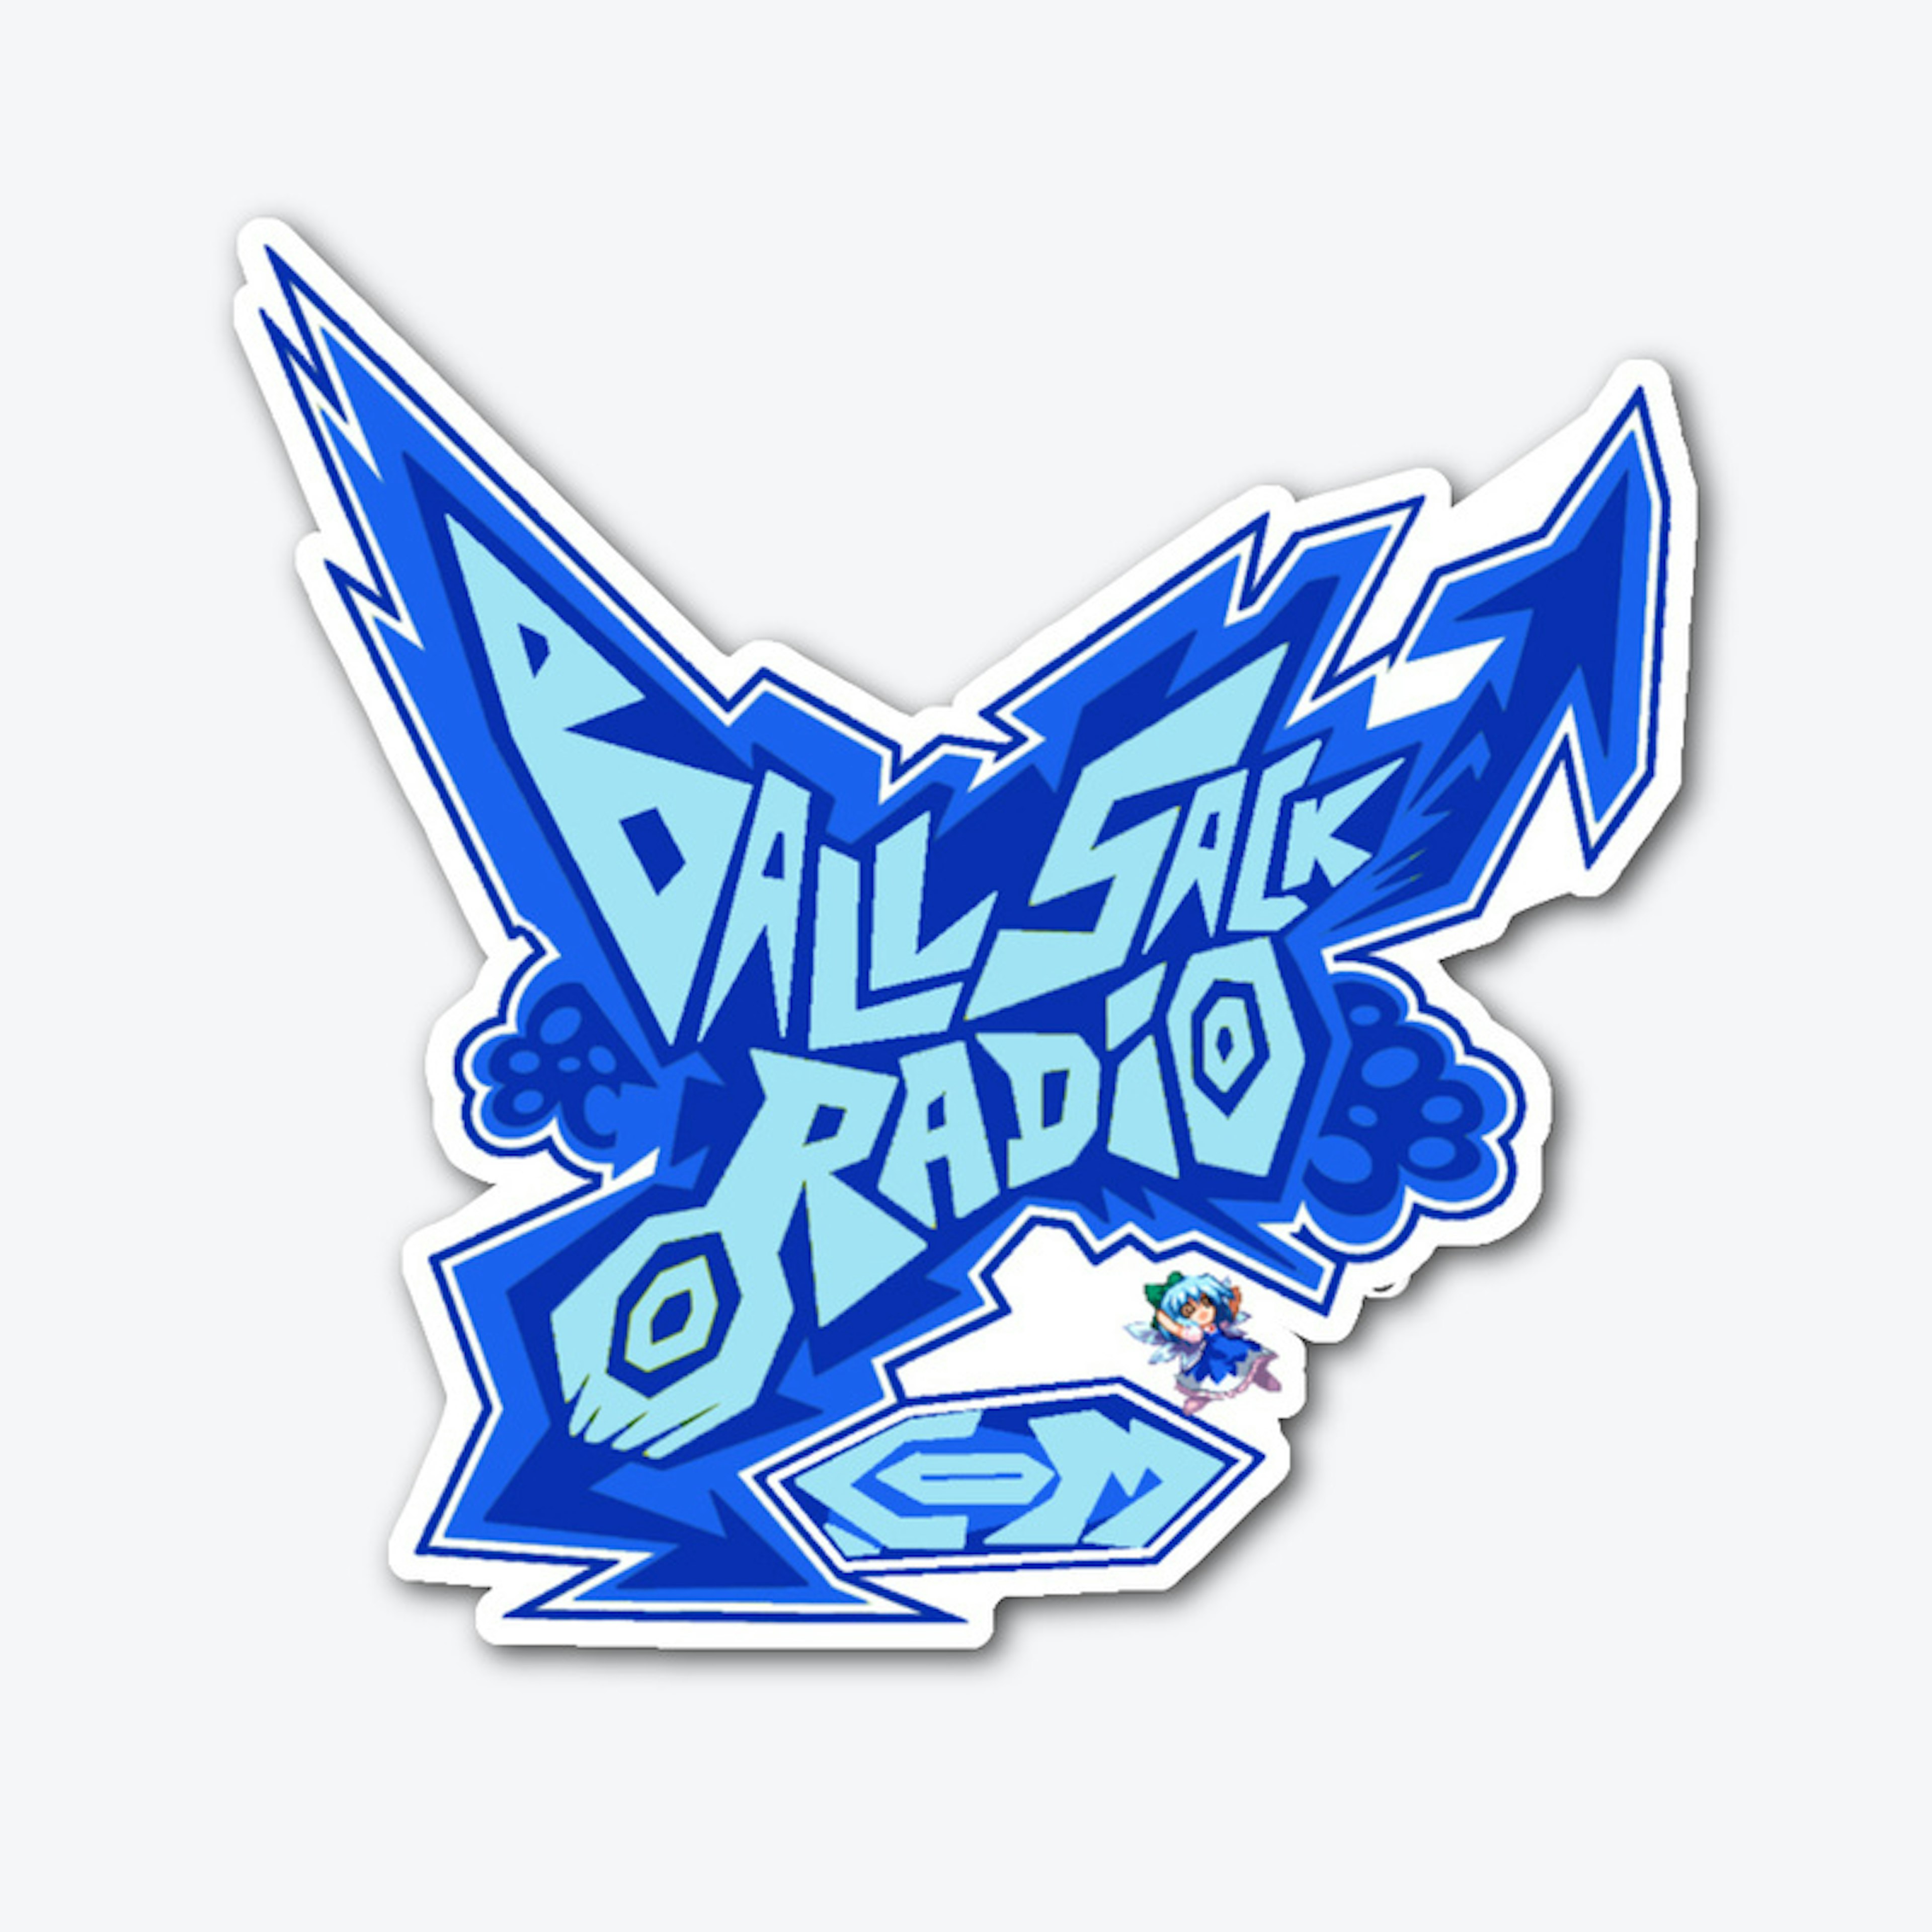 ballsack radio jsr logo